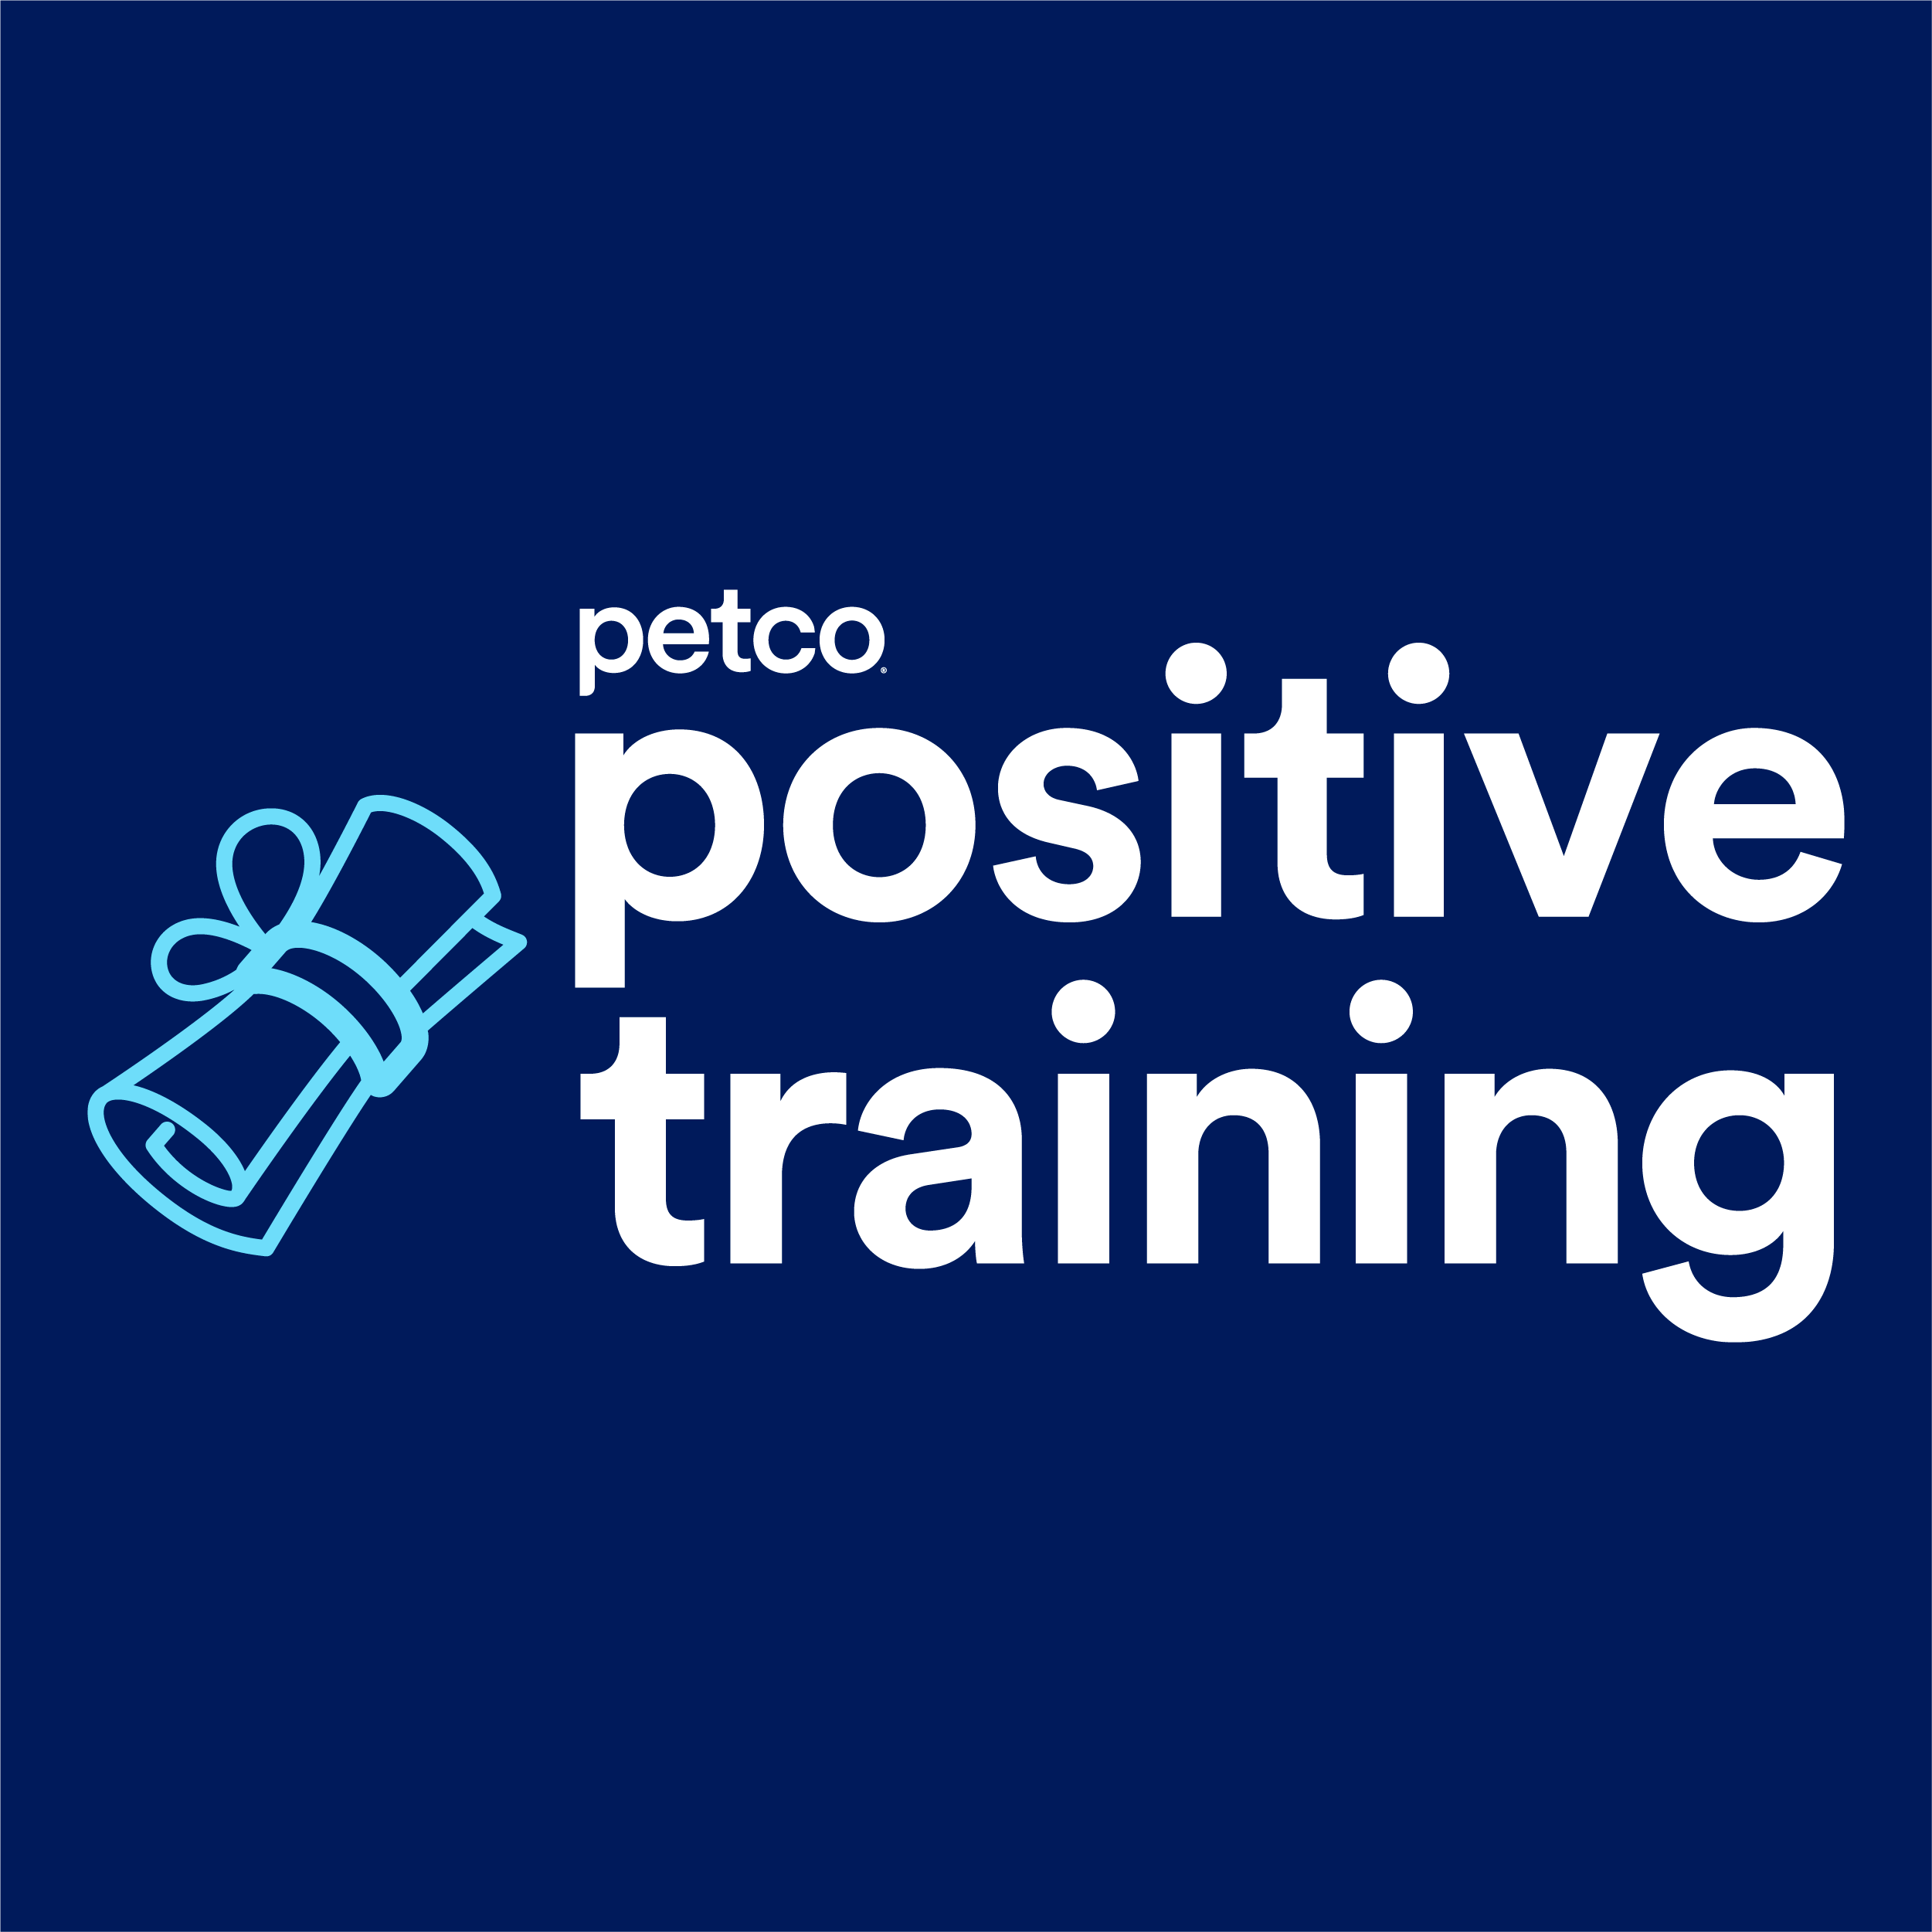 Petco Dog Training - Detroit, MI 48203 - (313)366-2129 | ShowMeLocal.com